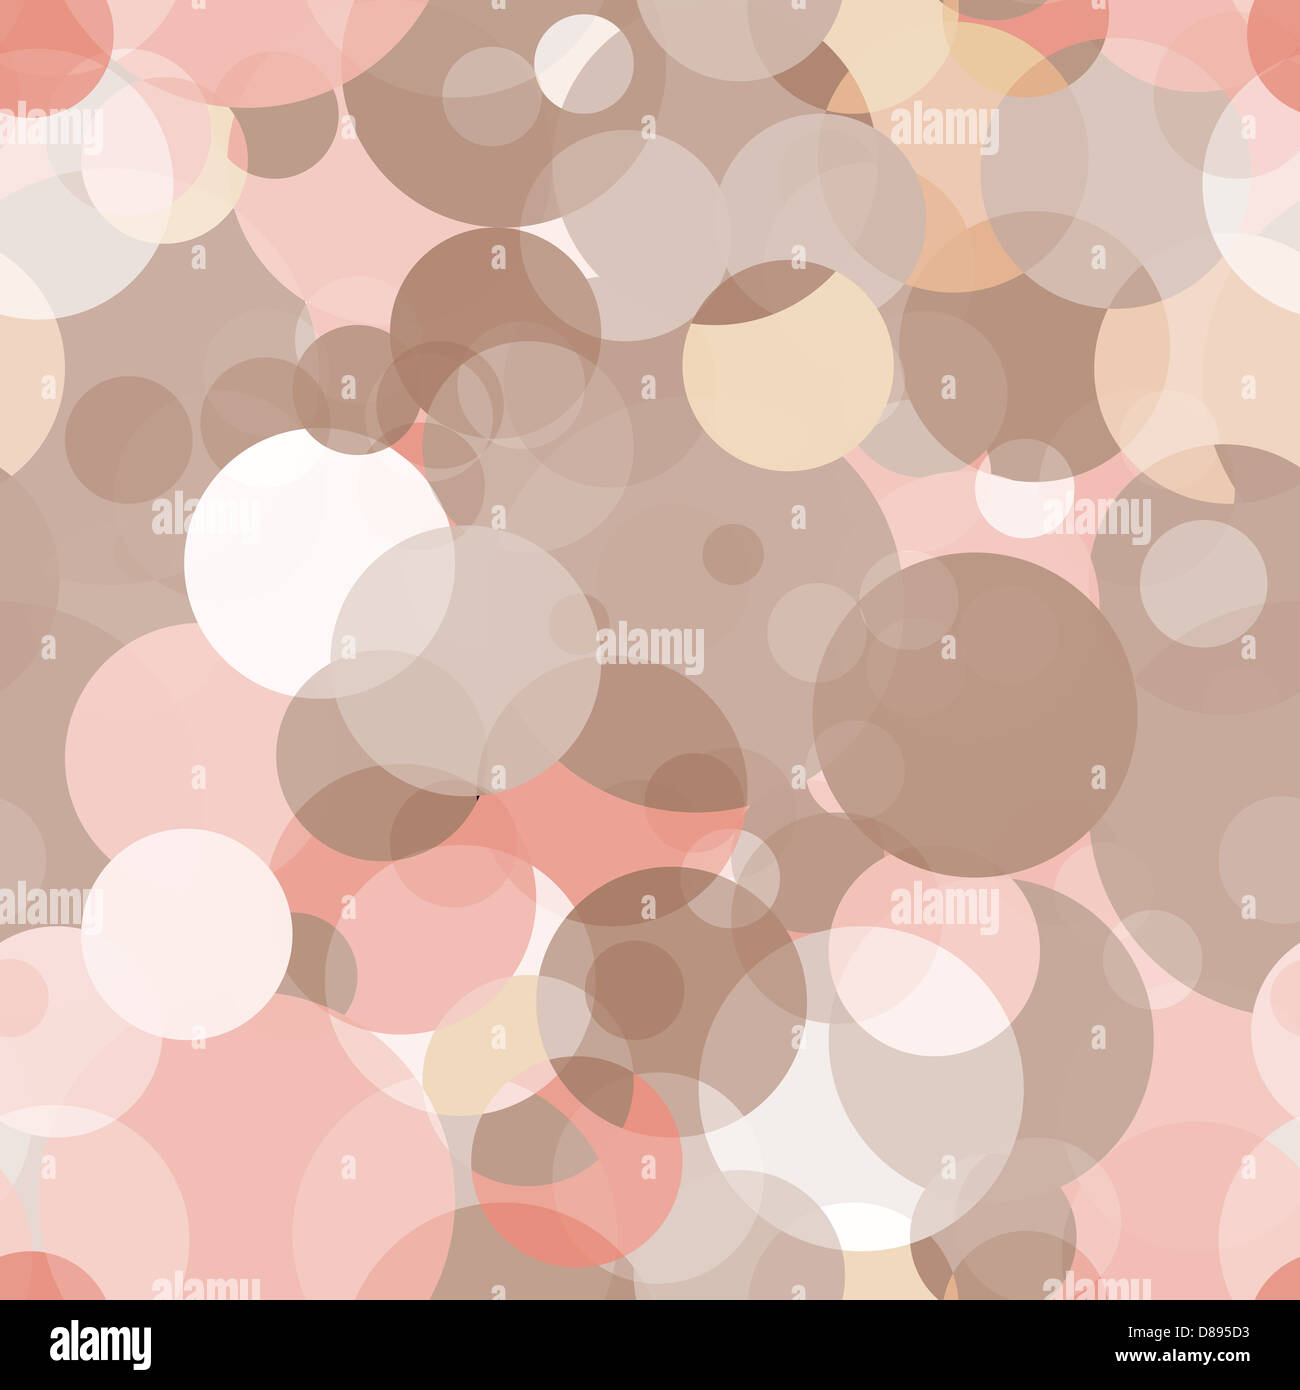 Einfache nahtlose Muster - Kreise in verschiedenen Farbtönen Stockfoto